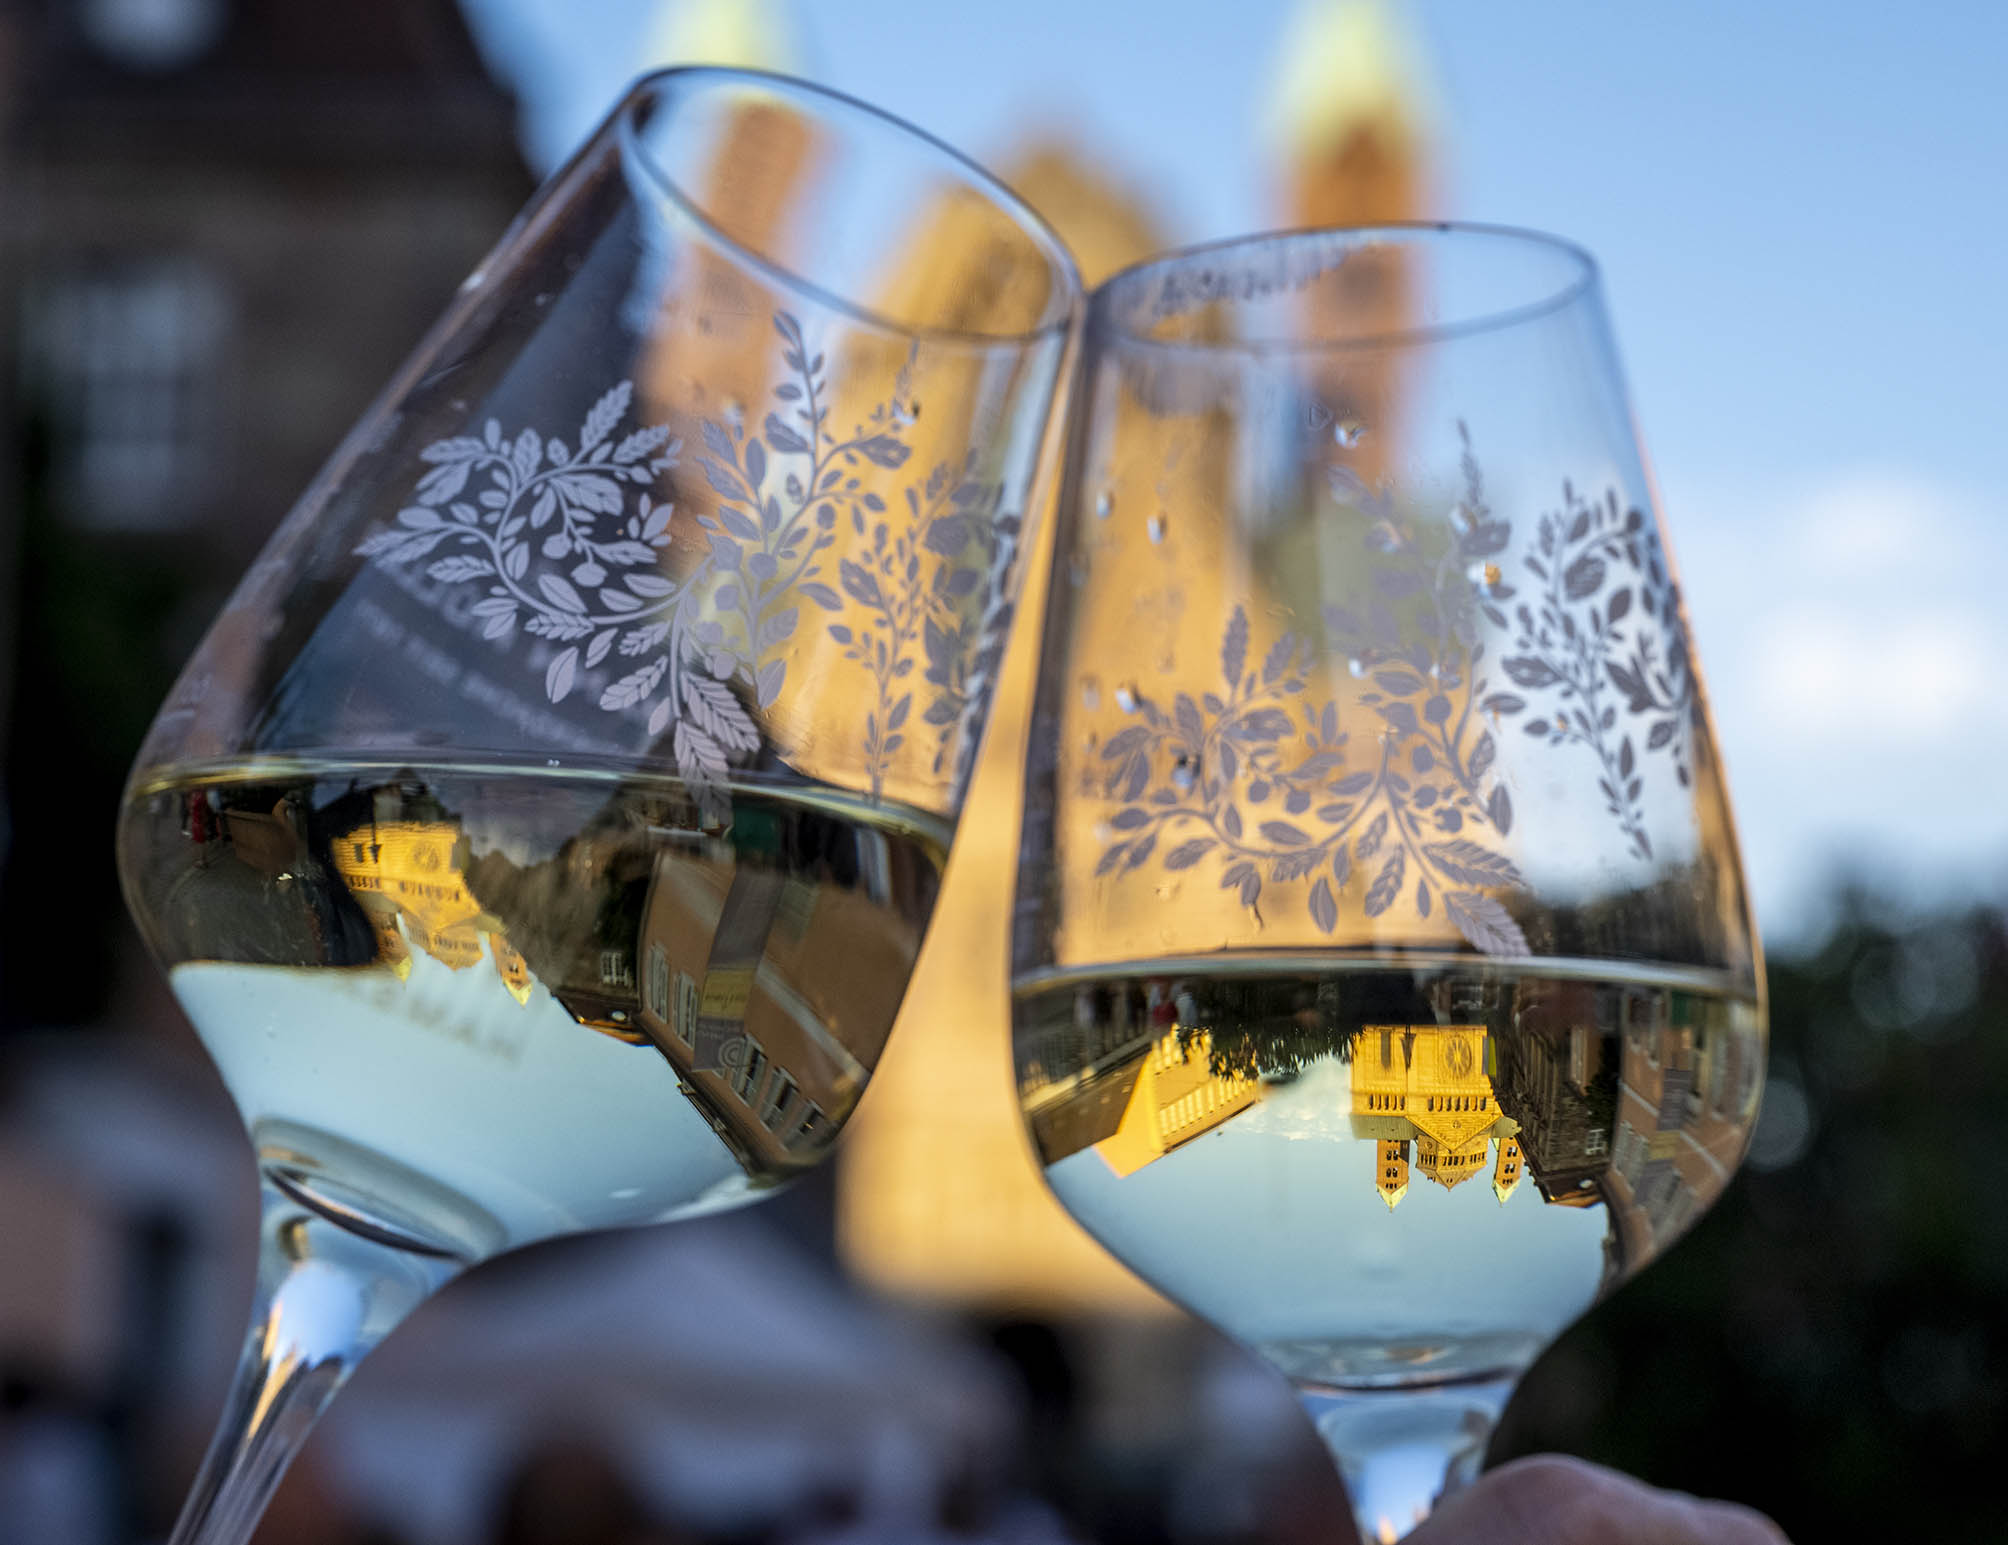 Zwei Gläser mit Weißwein und Blätterdekor stoßen an, im Hintergrund verschwommen der Speyerer Dom, der sich kopfüber in Wein spiegelt